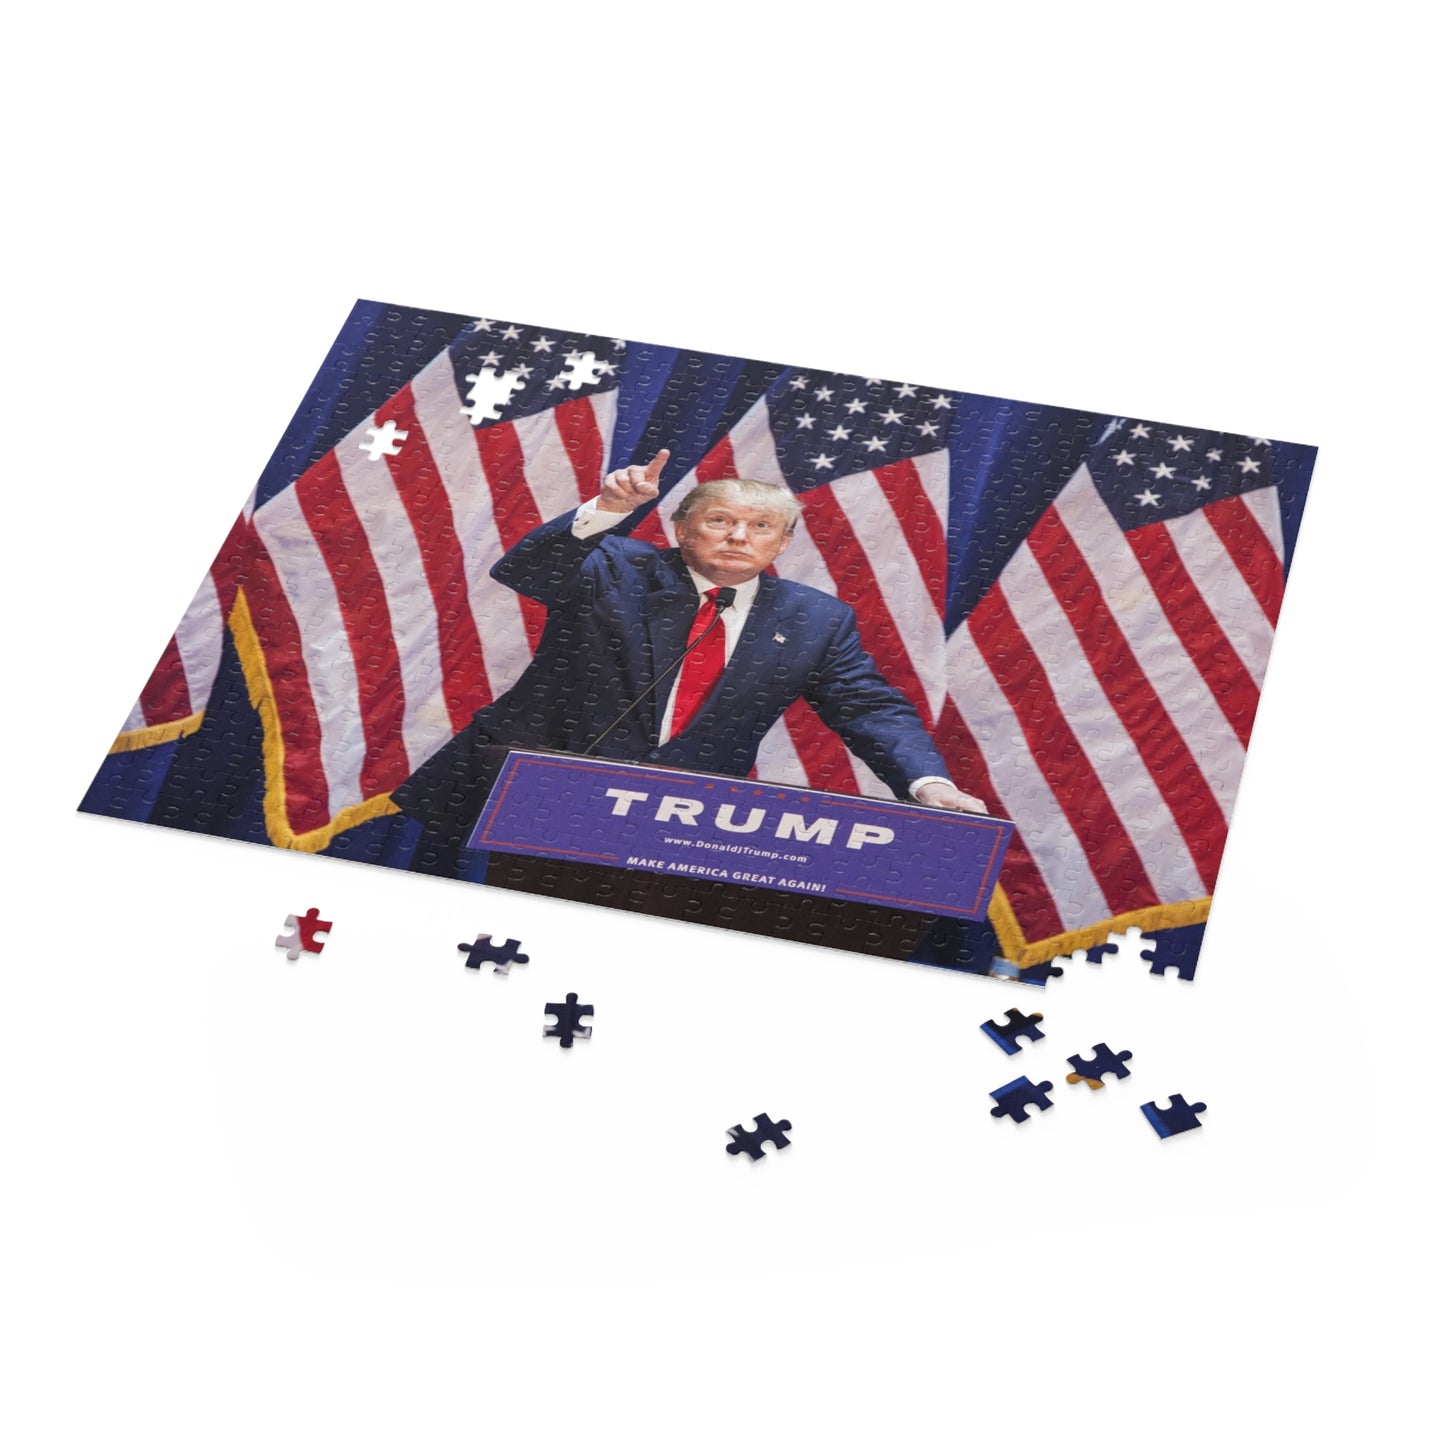 Trump mit amerikanischen Flaggen MAGA (252 oder 500 Teile), hochwertiges, dickes Puzzlespiel